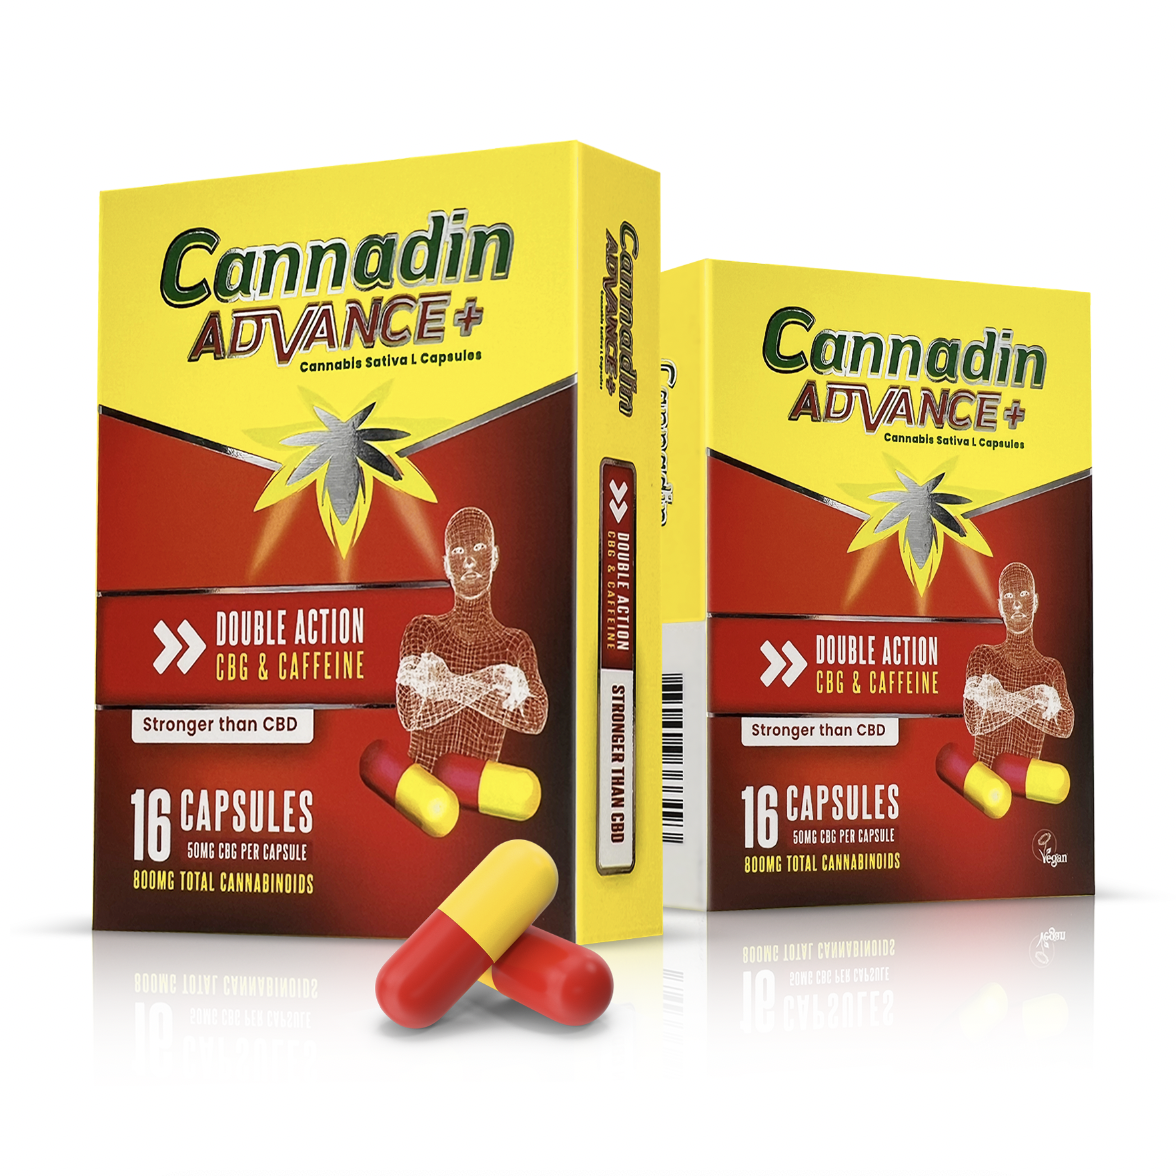 Cannadin Advanced CBG & Caffeine Capsules